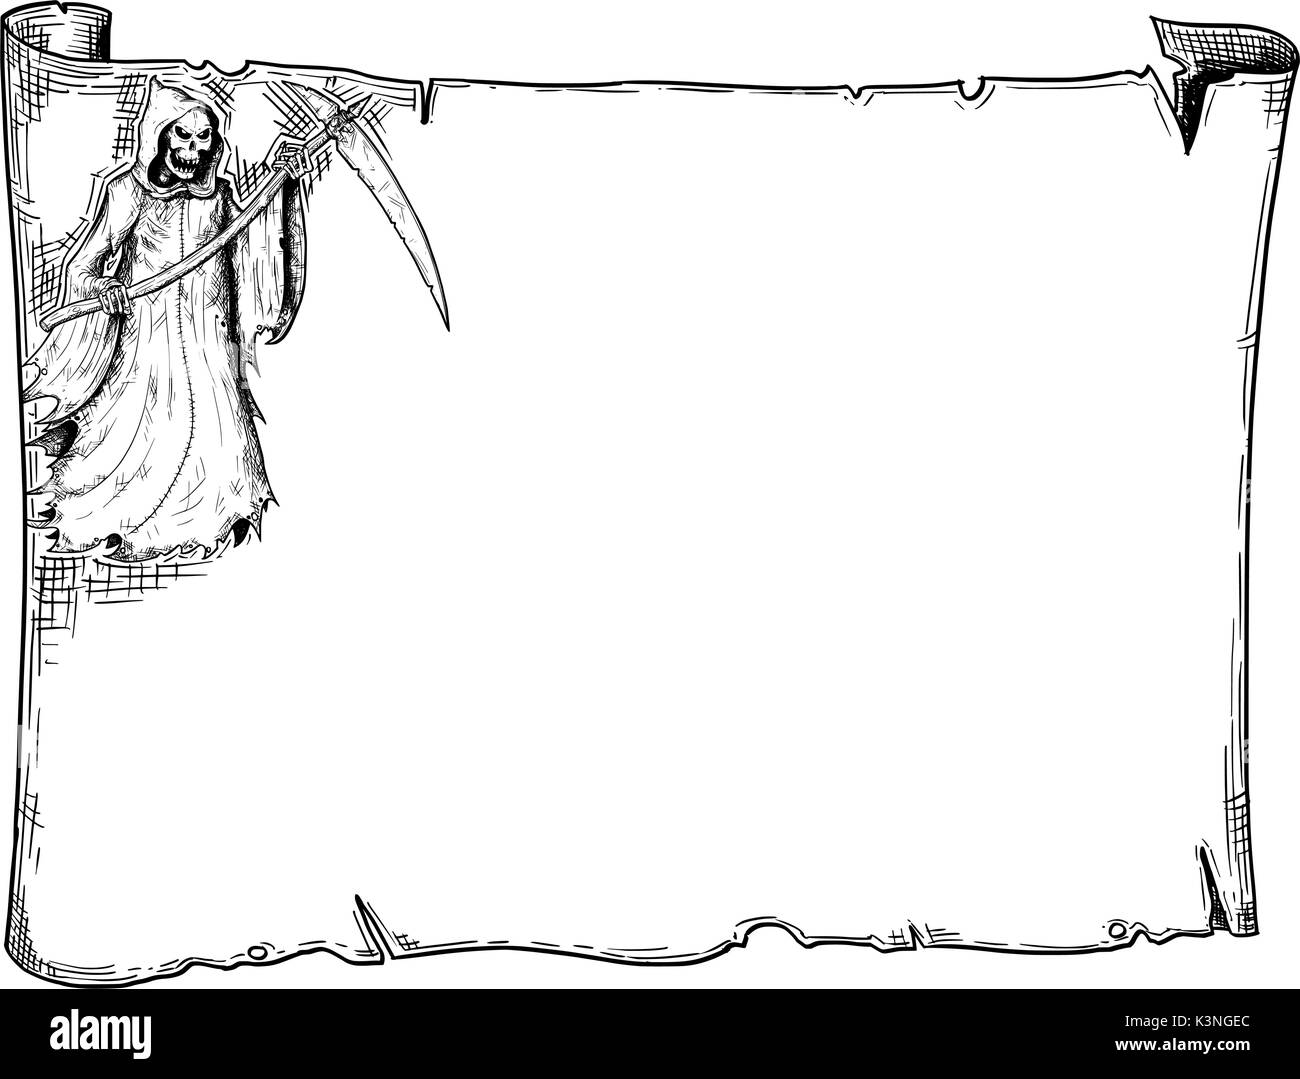 Disegno a mano cartoon Halloween di scorrimento del telaio foglio di pergamena con Grim Reaper illustrazioni. Illustrazione Vettoriale